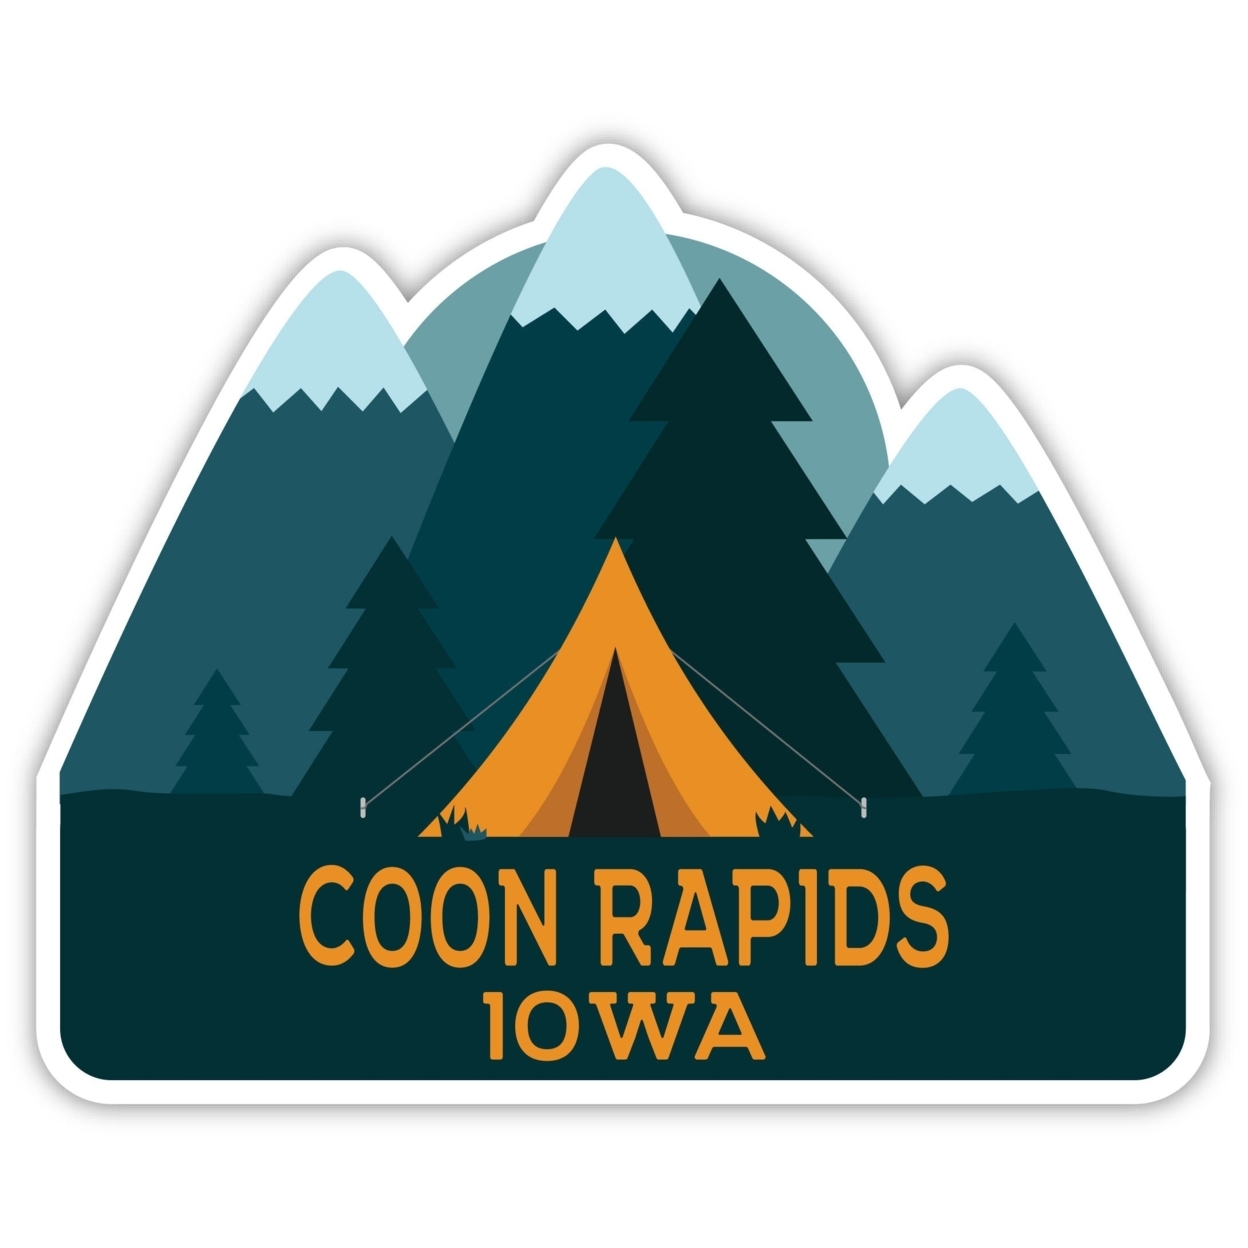 Coon Rapids Iowa Souvenir Decorative Stickers (Choose Theme And Size) - Single Unit, 6-Inch, Tent